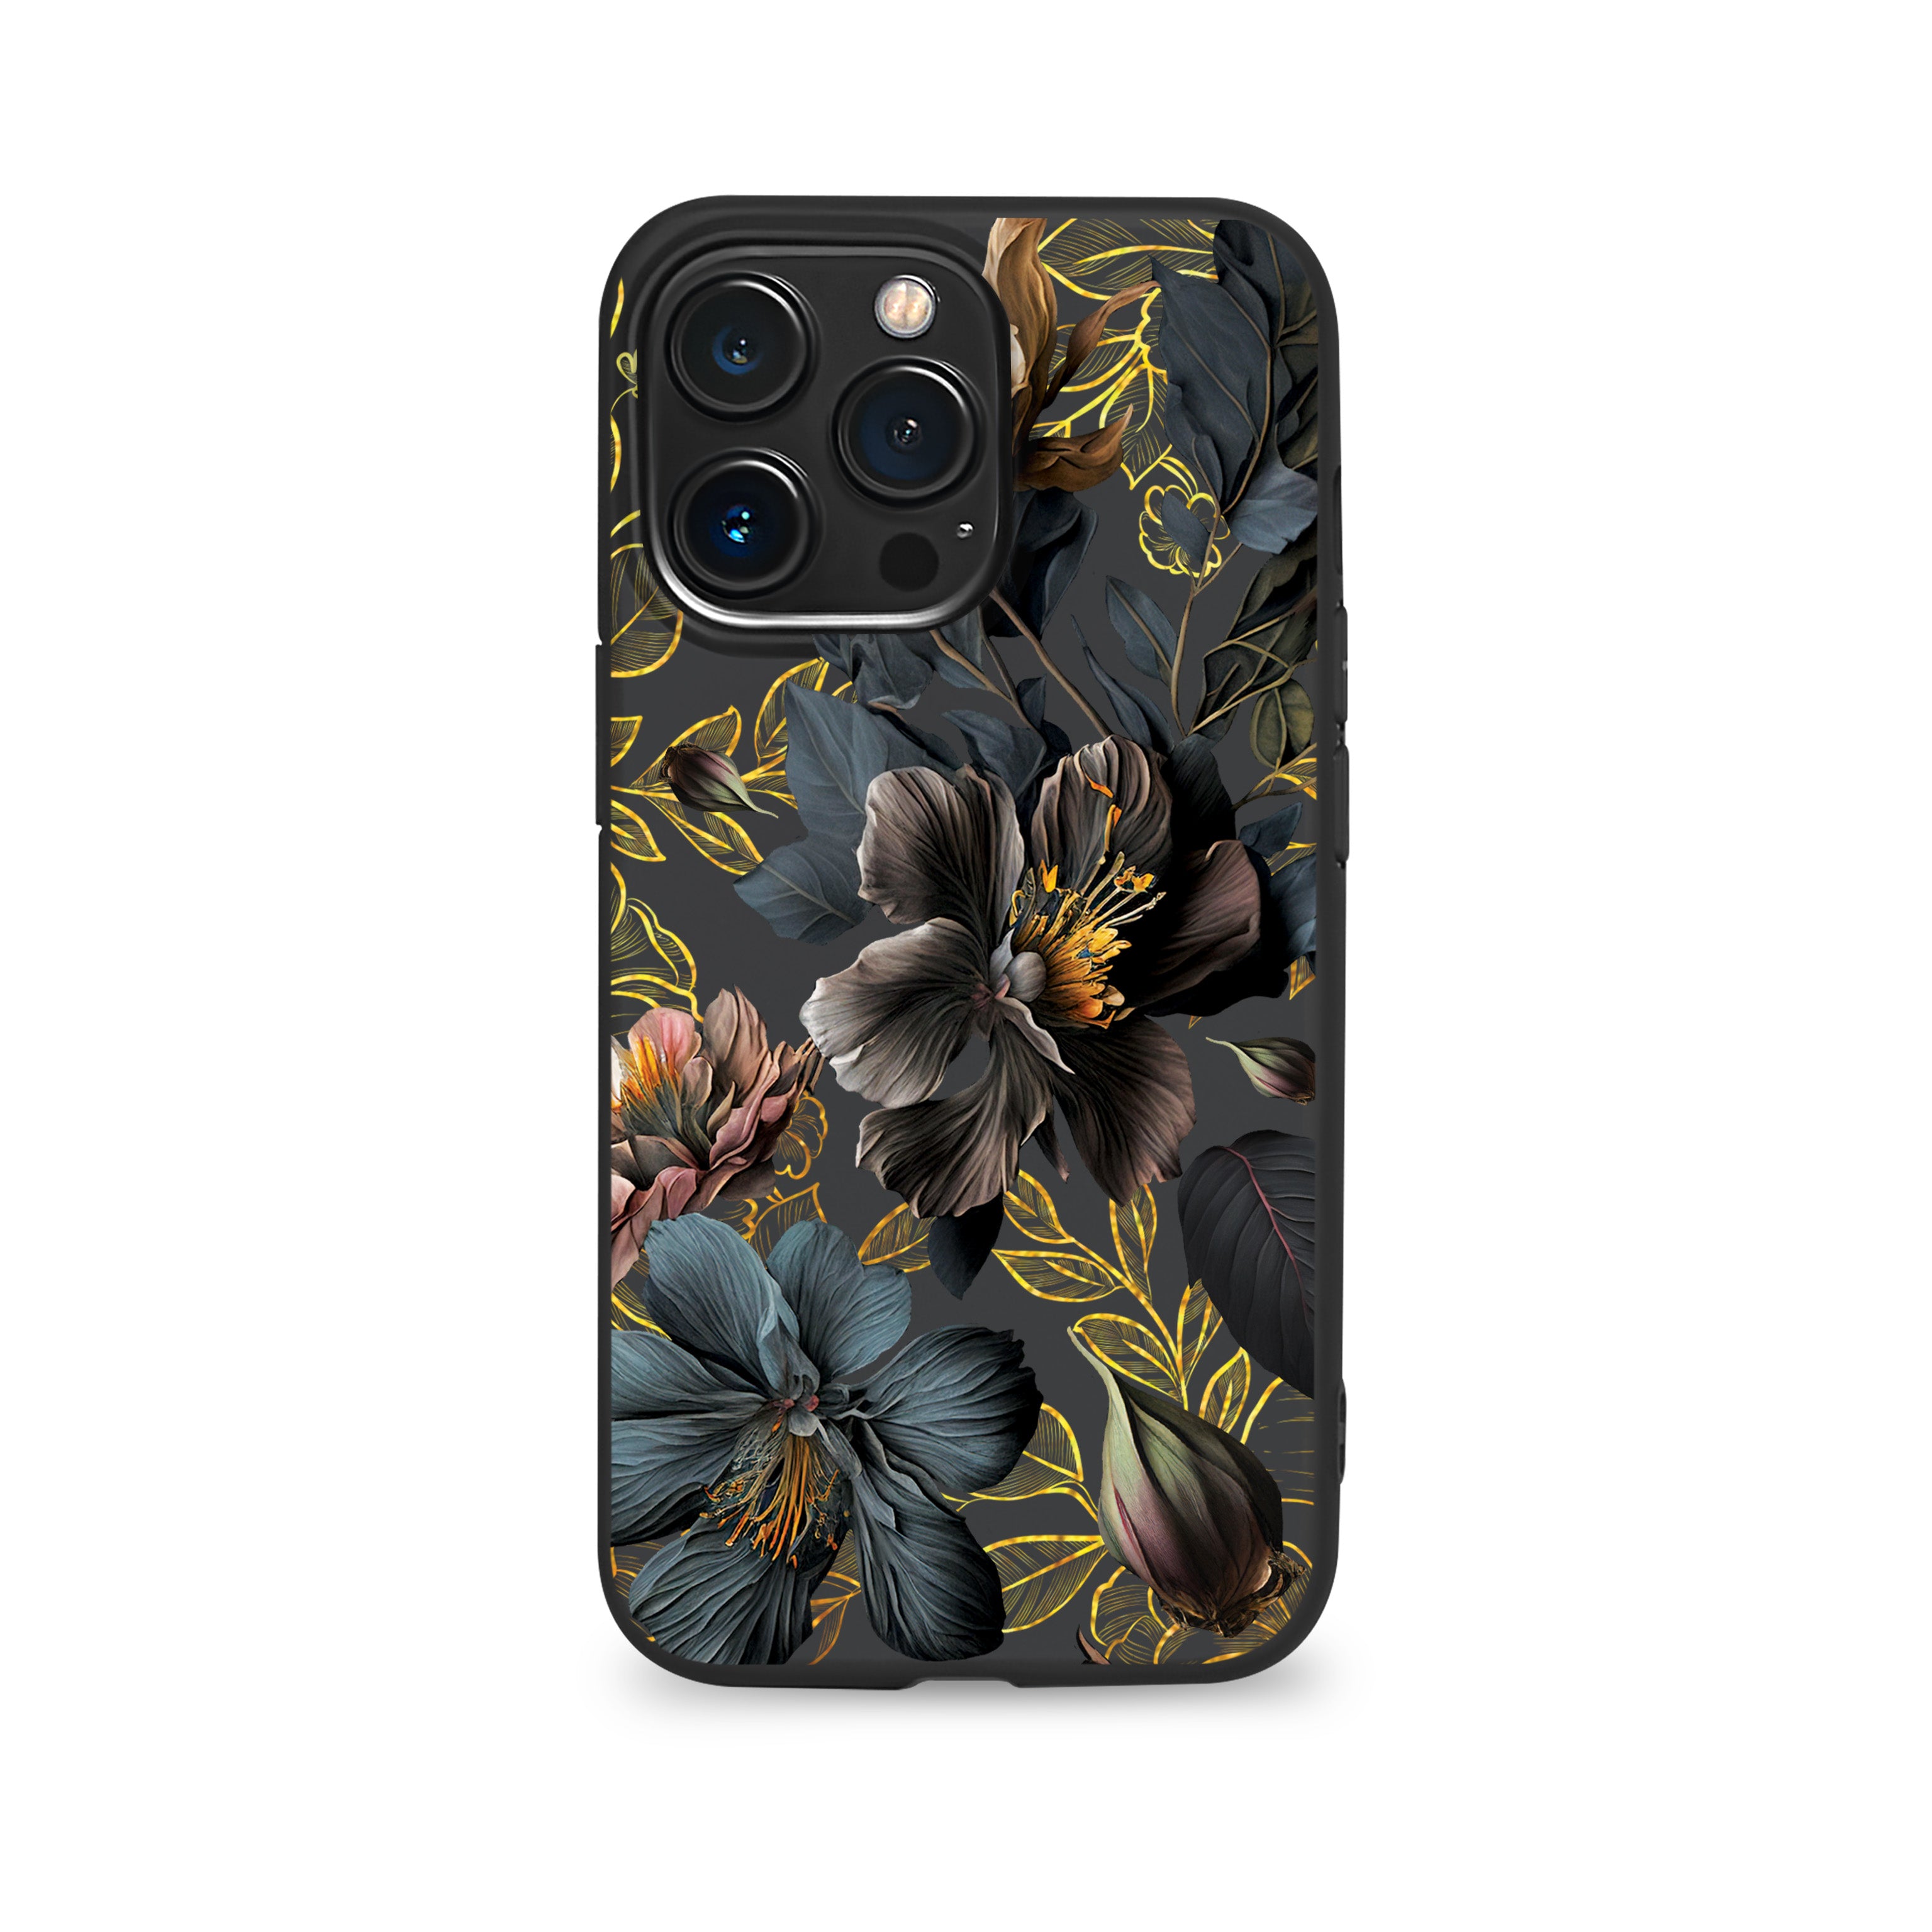 Black Flowers phone case for iPhone (Black Premium TPU)